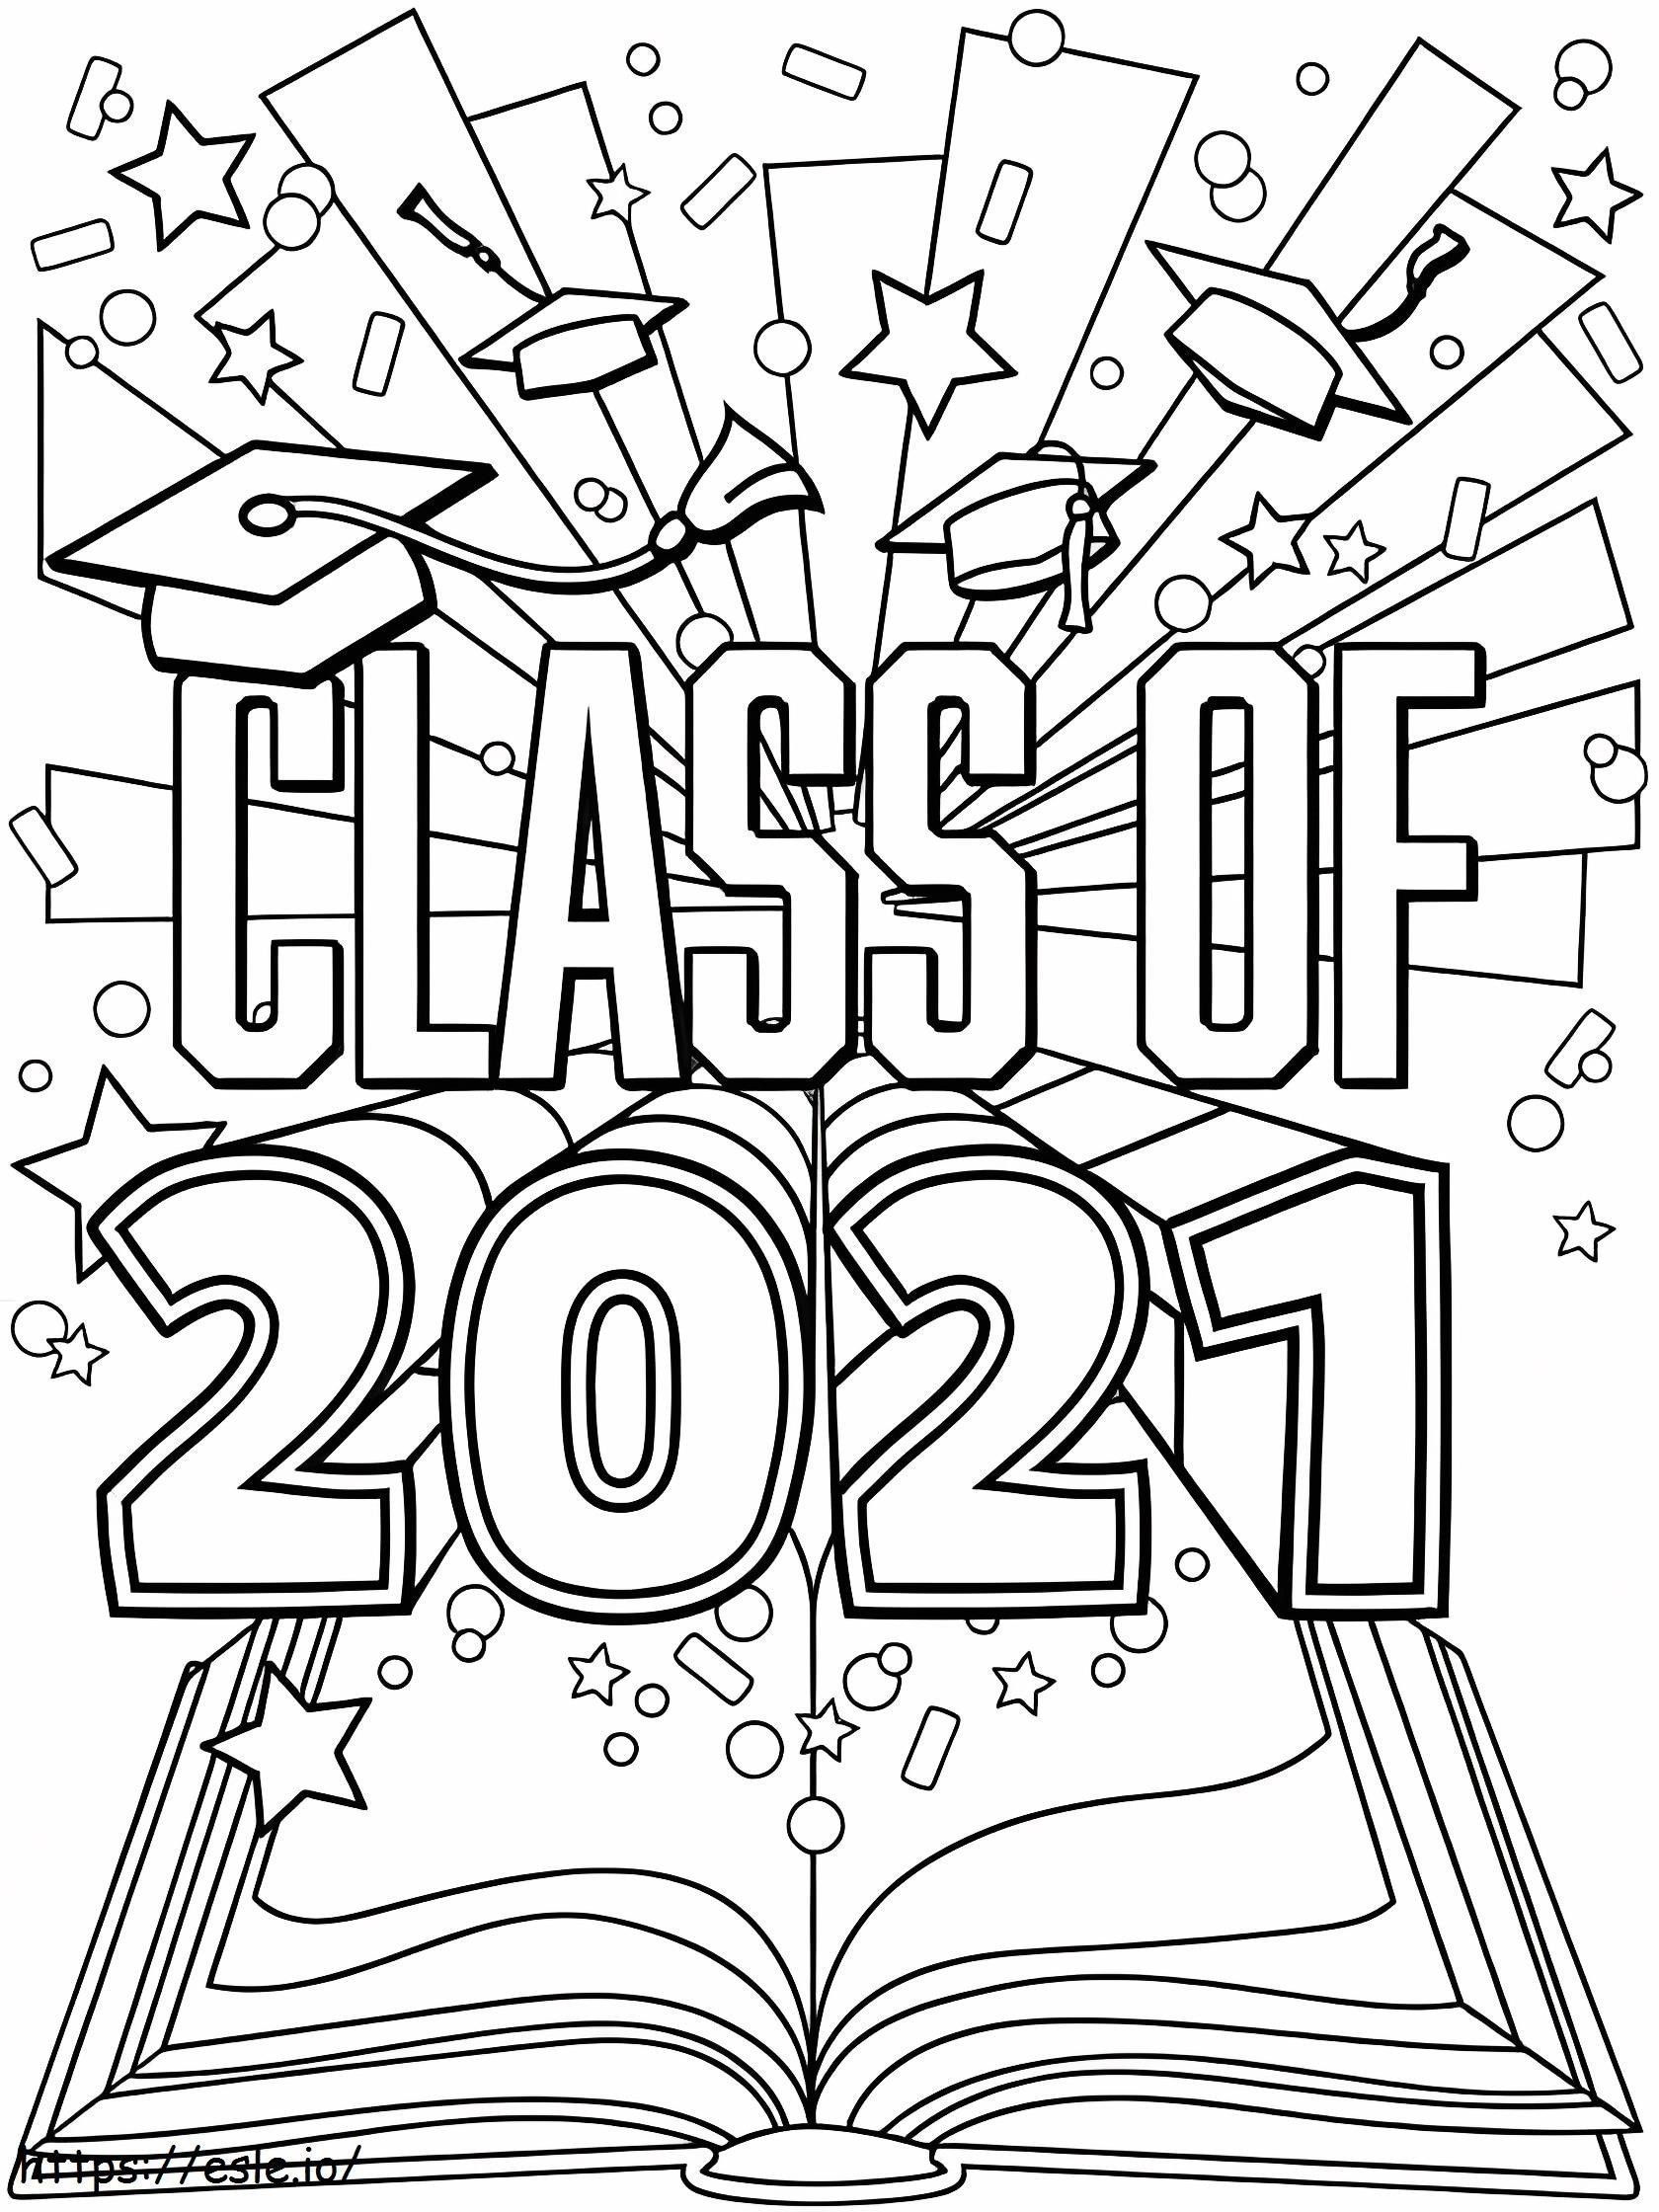 Clase de graduación 2021 para colorear